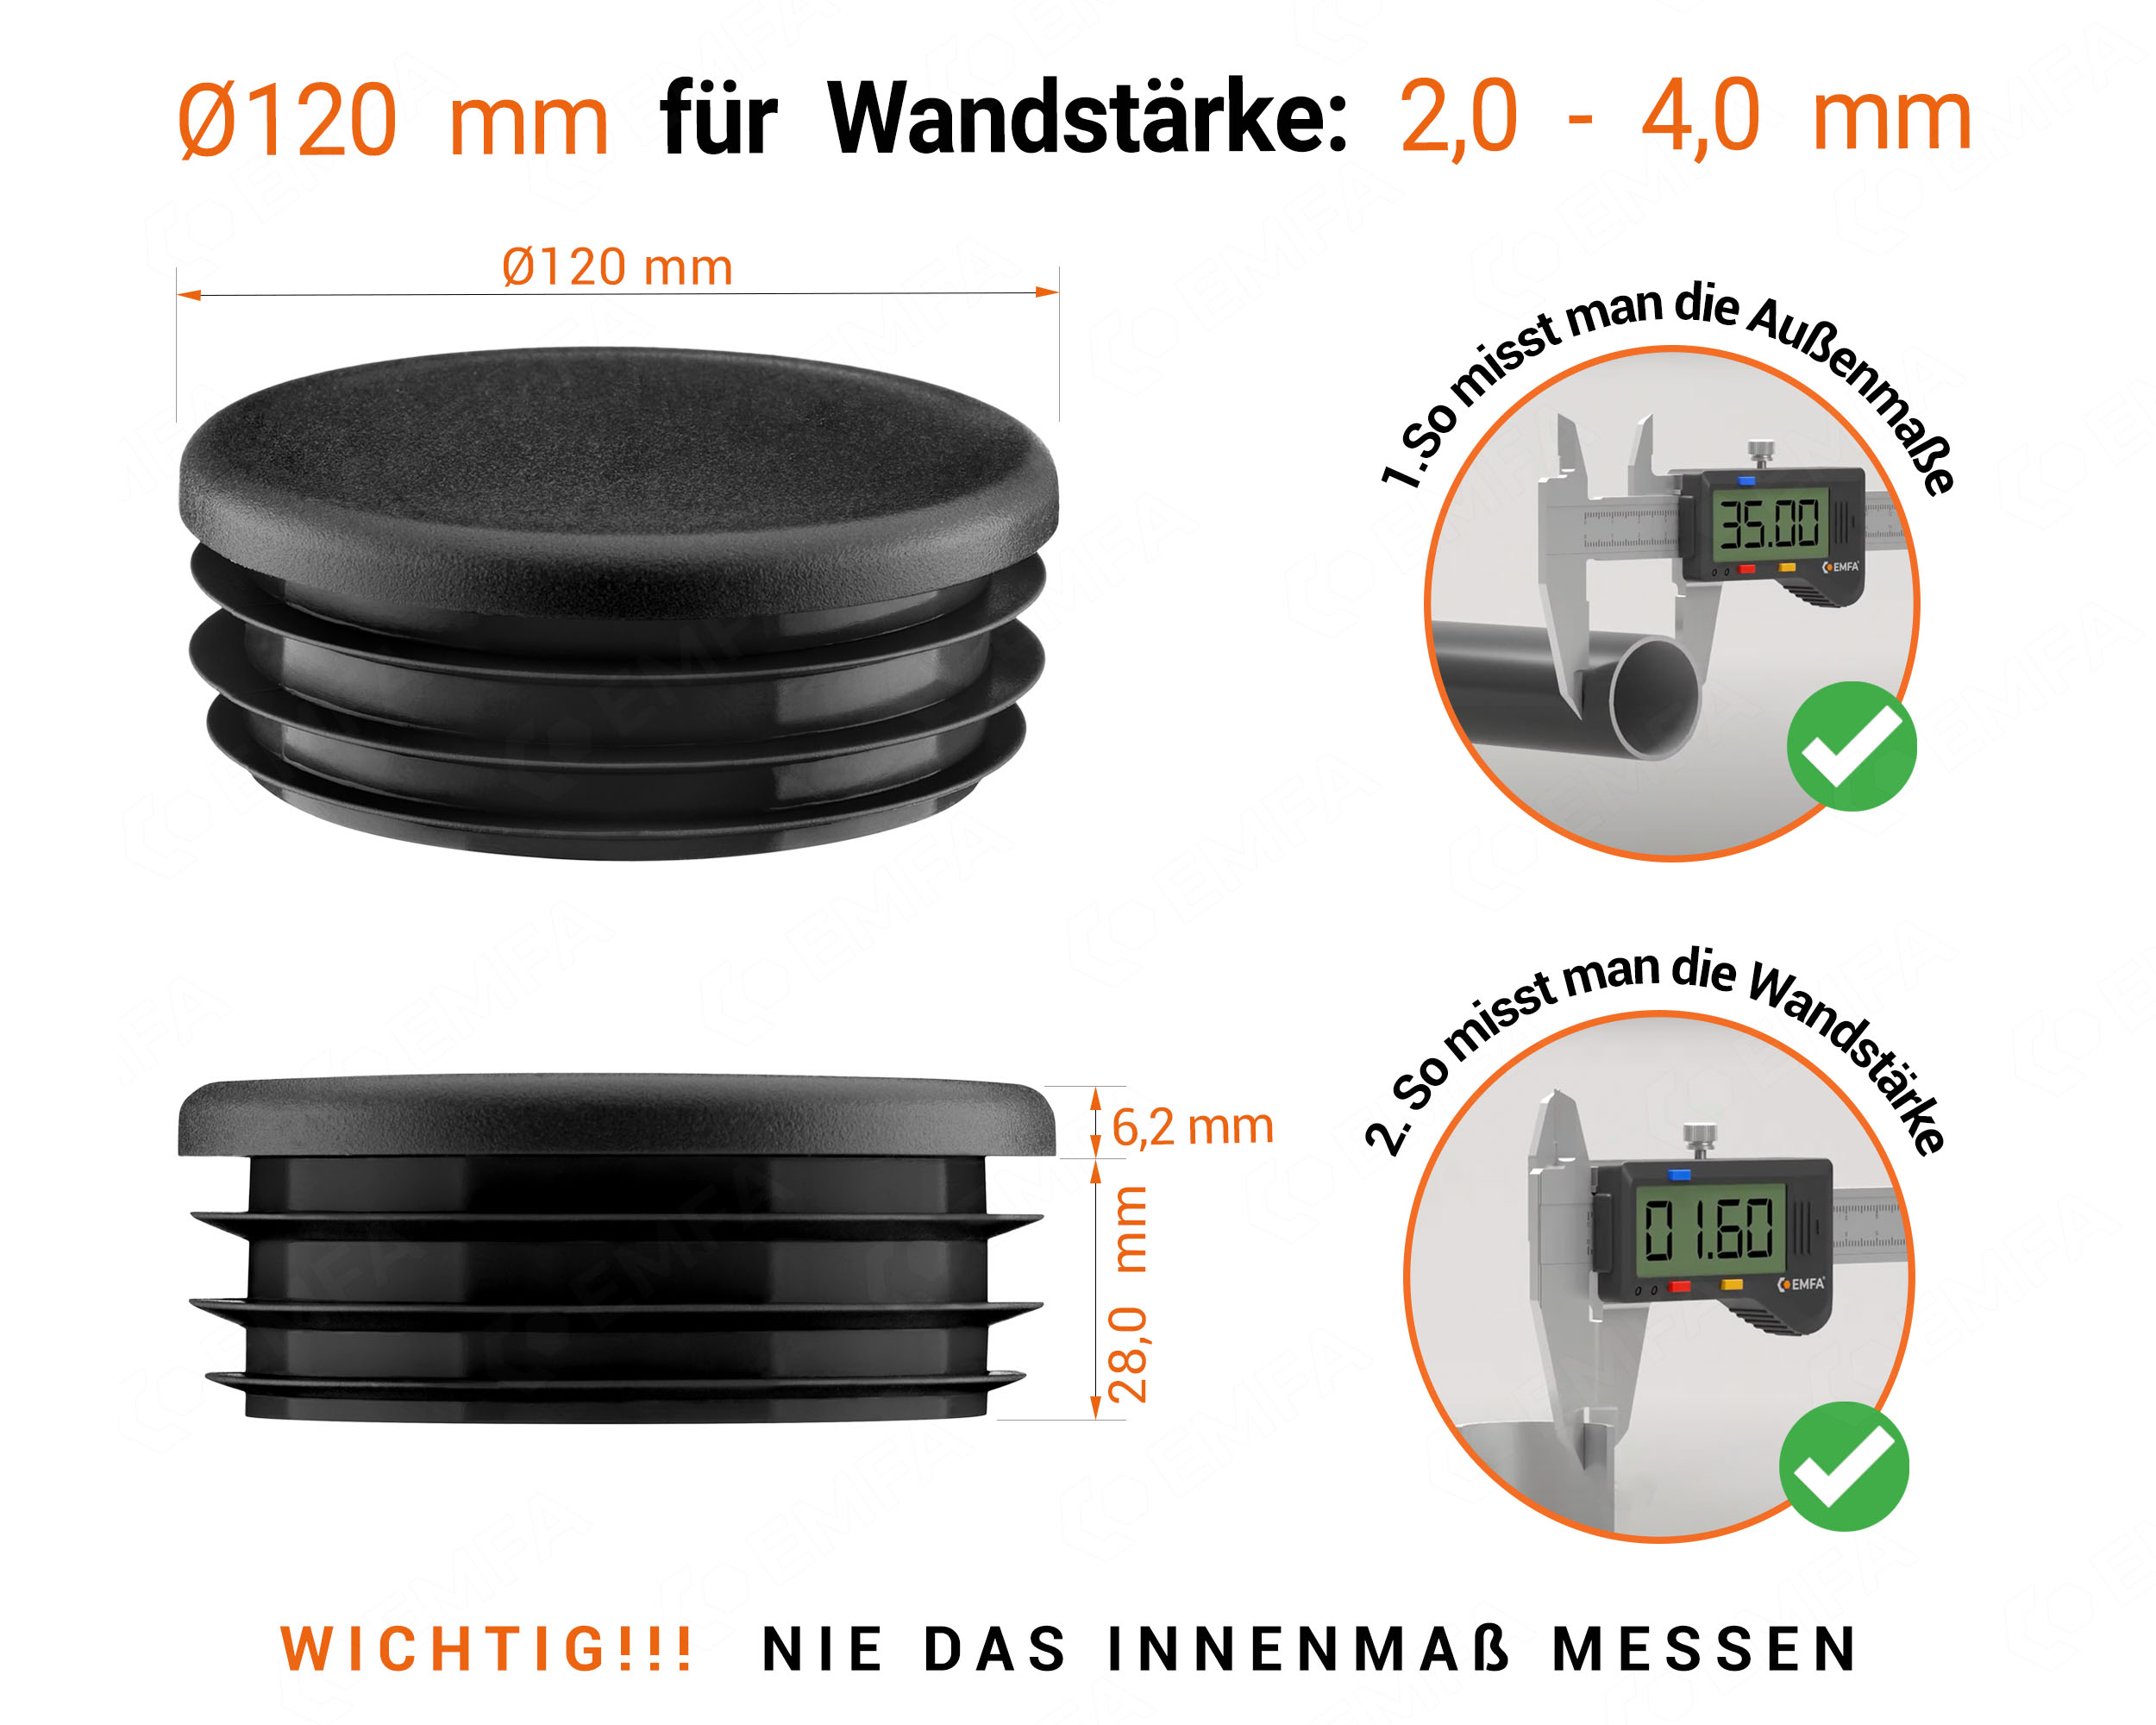 Schwarze Endkappe für Rundrohre in der Größe 120 mm mit technischen Abmessungen und Anleitung für korrekte Messung